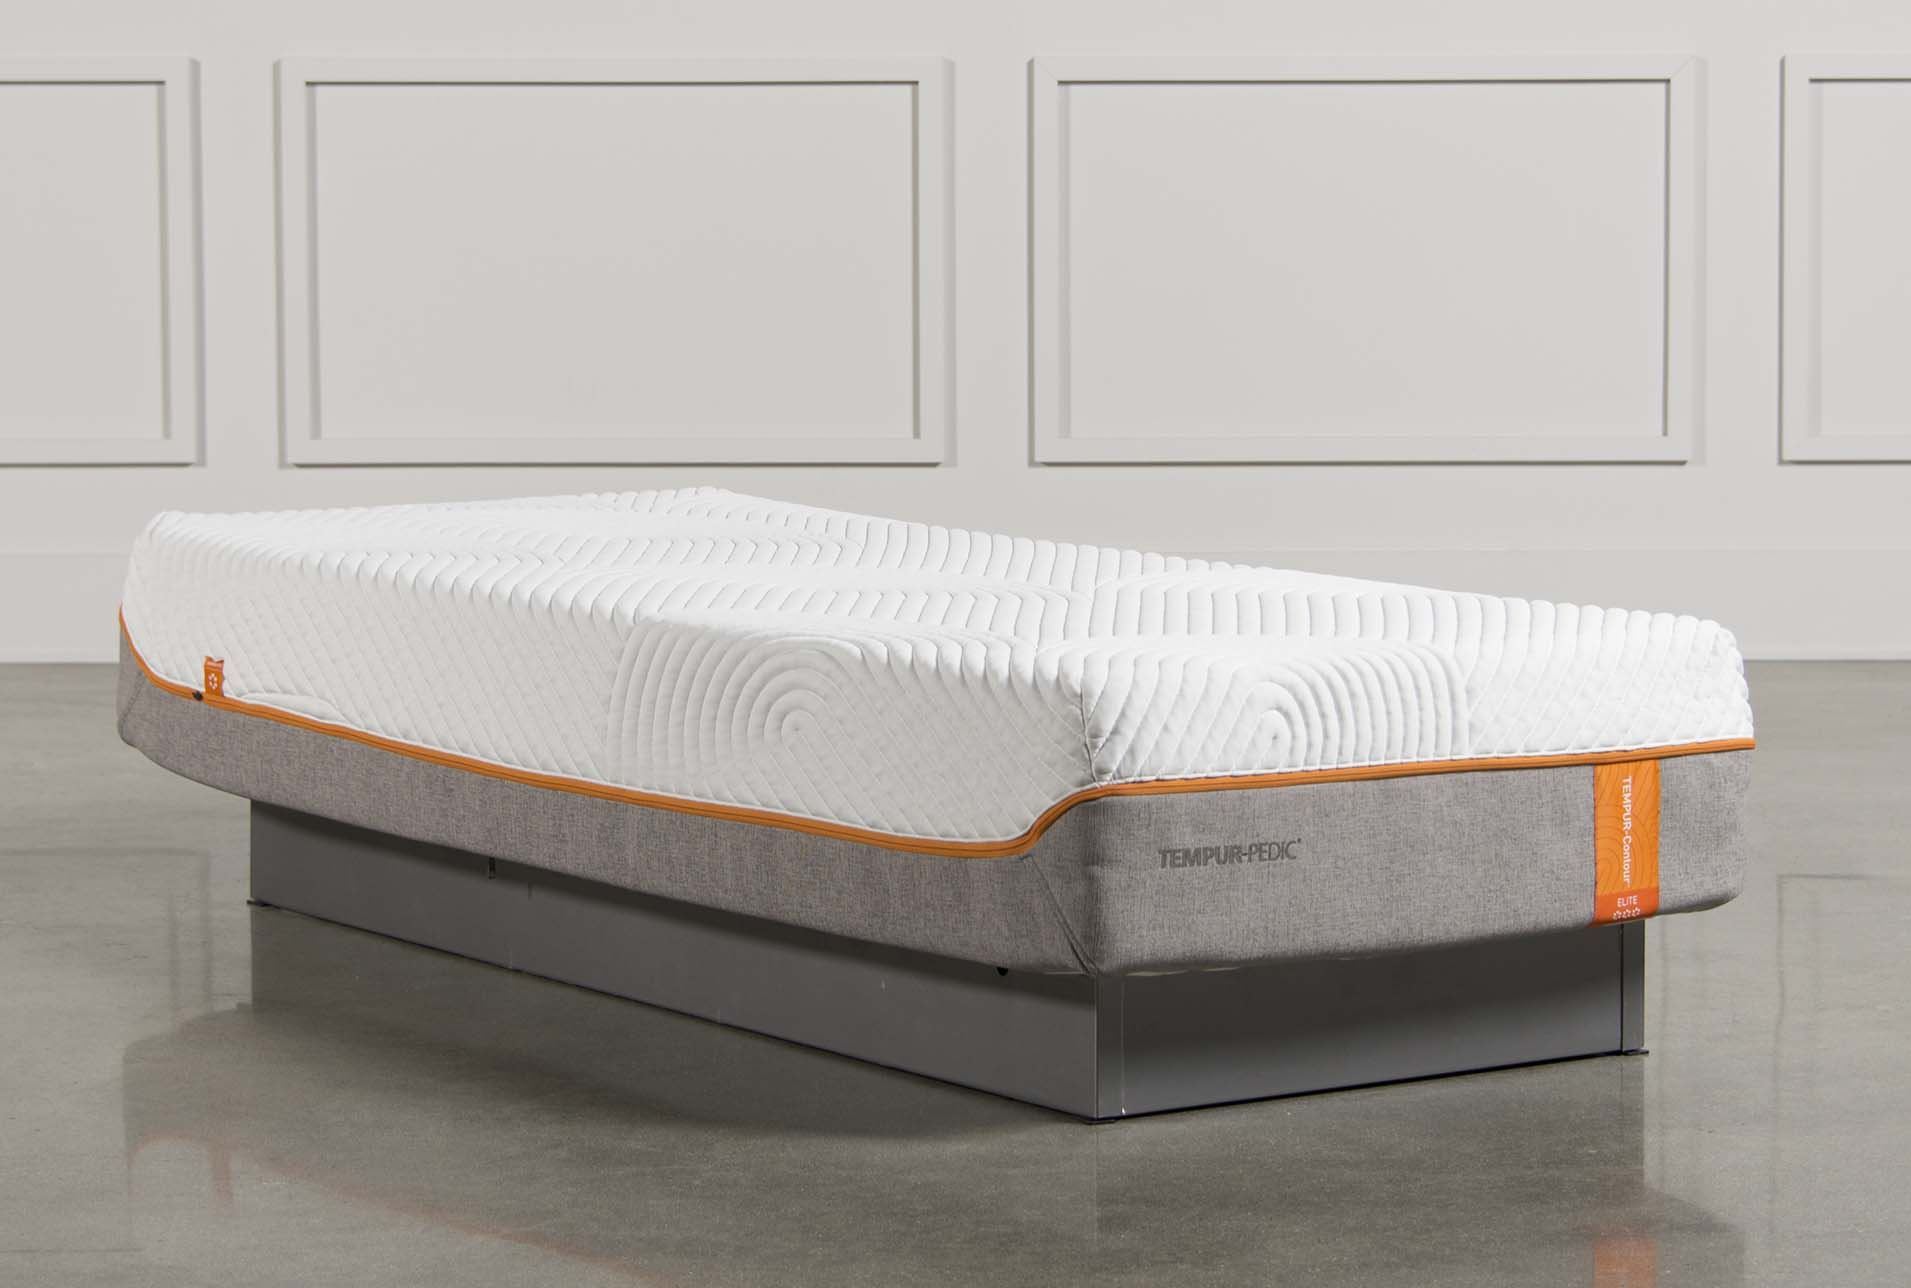 65 inch long mattress